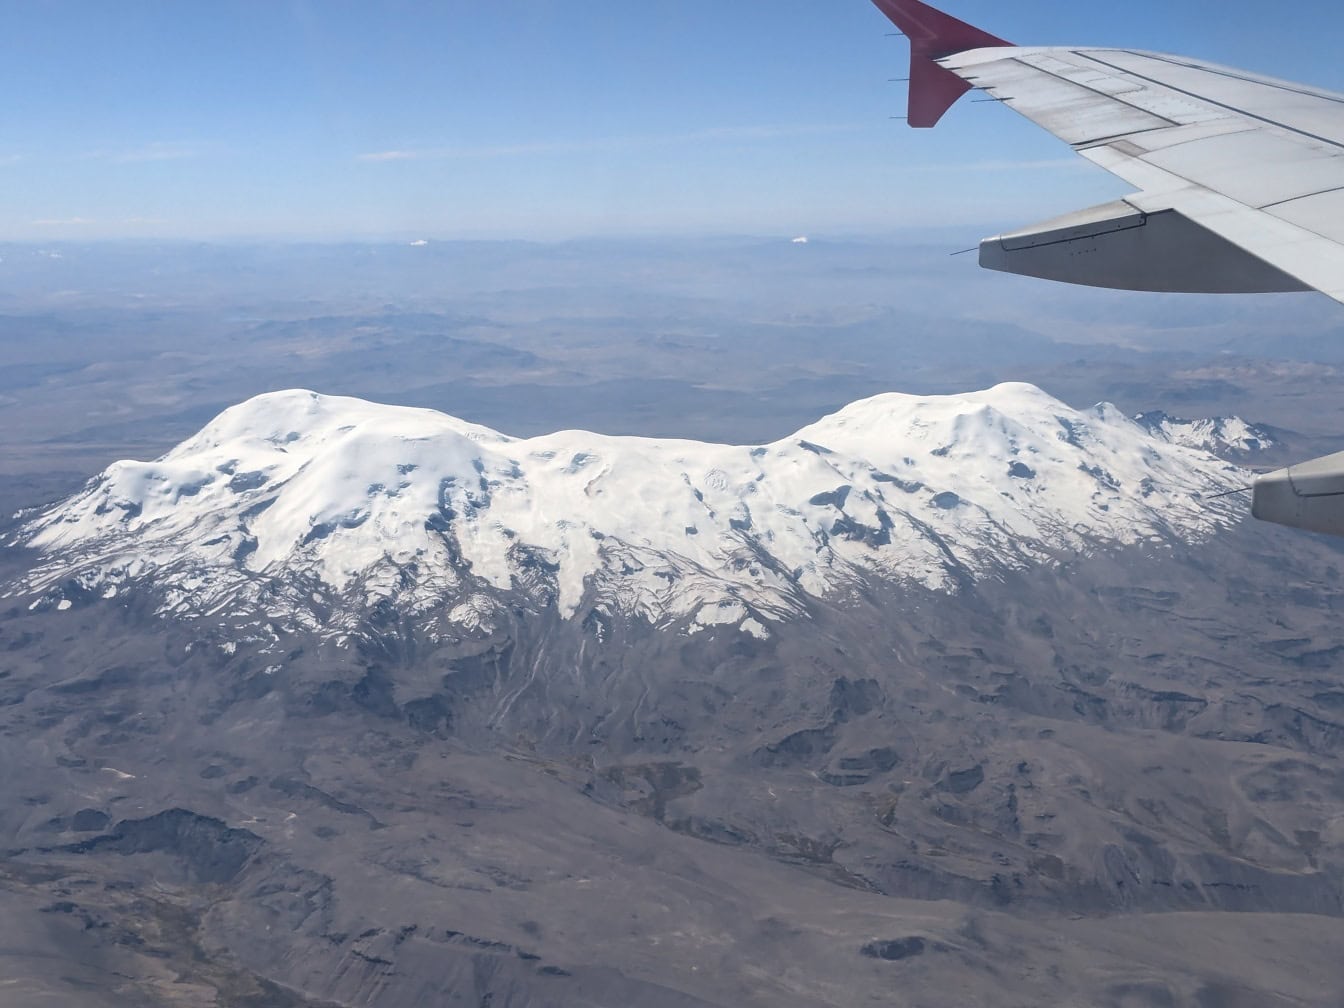 Fotografia z lietadla s krídlom lietadla v popredí a zasneženou sopkou Coropuna nachádzajúcou sa v Andách v juhovýchodnom a strednom Peru v pozadí